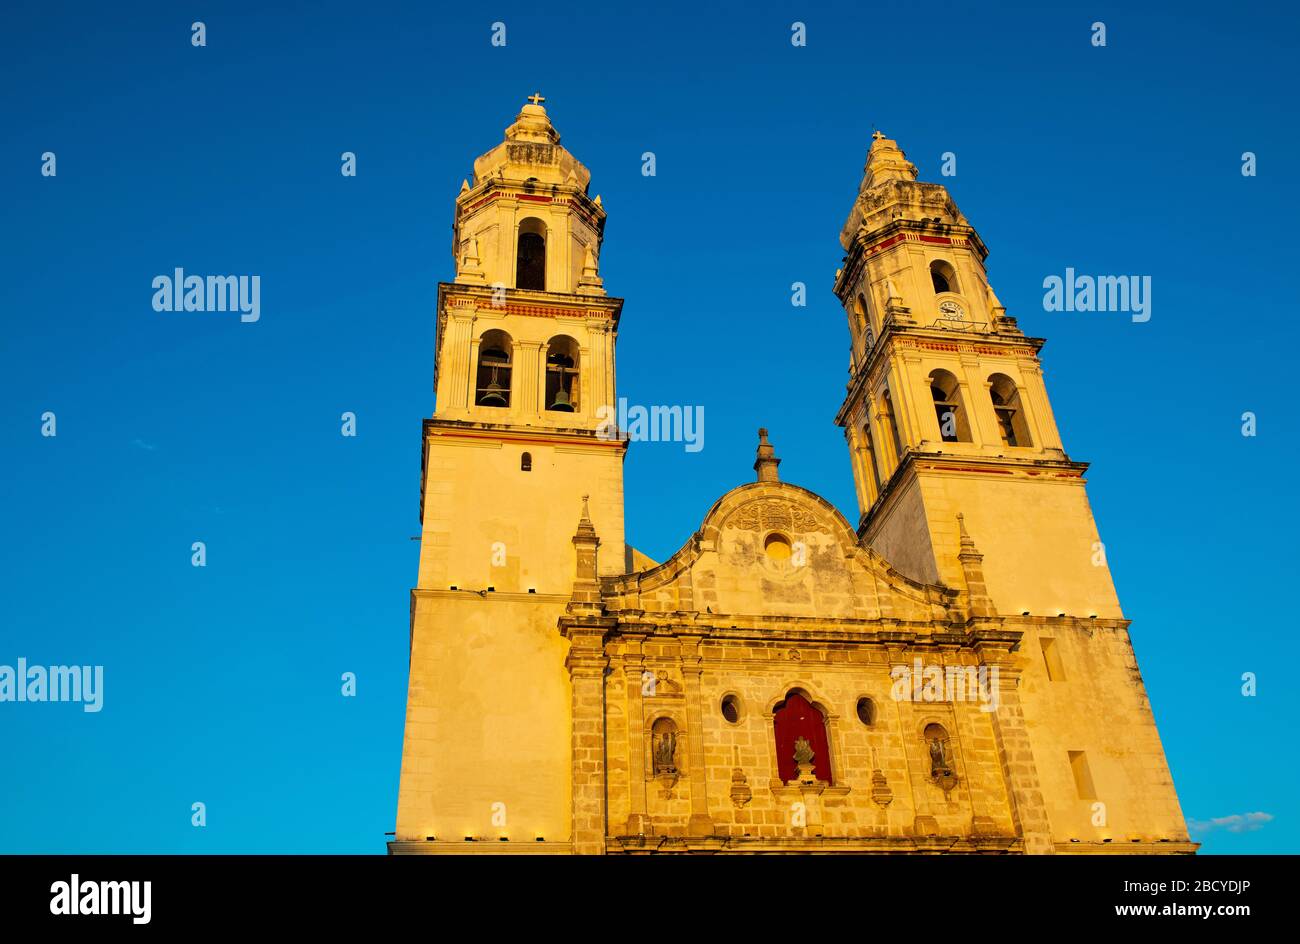 Fassade der Kathedrale unserer Lieben Frau von der Unbefleckten Empfängnis, bekannt als Cienfuegos-Kathedrale, bei Sonnenuntergang, Campeche City, Yucatan-Halbinsel, Mexiko. Stockfoto